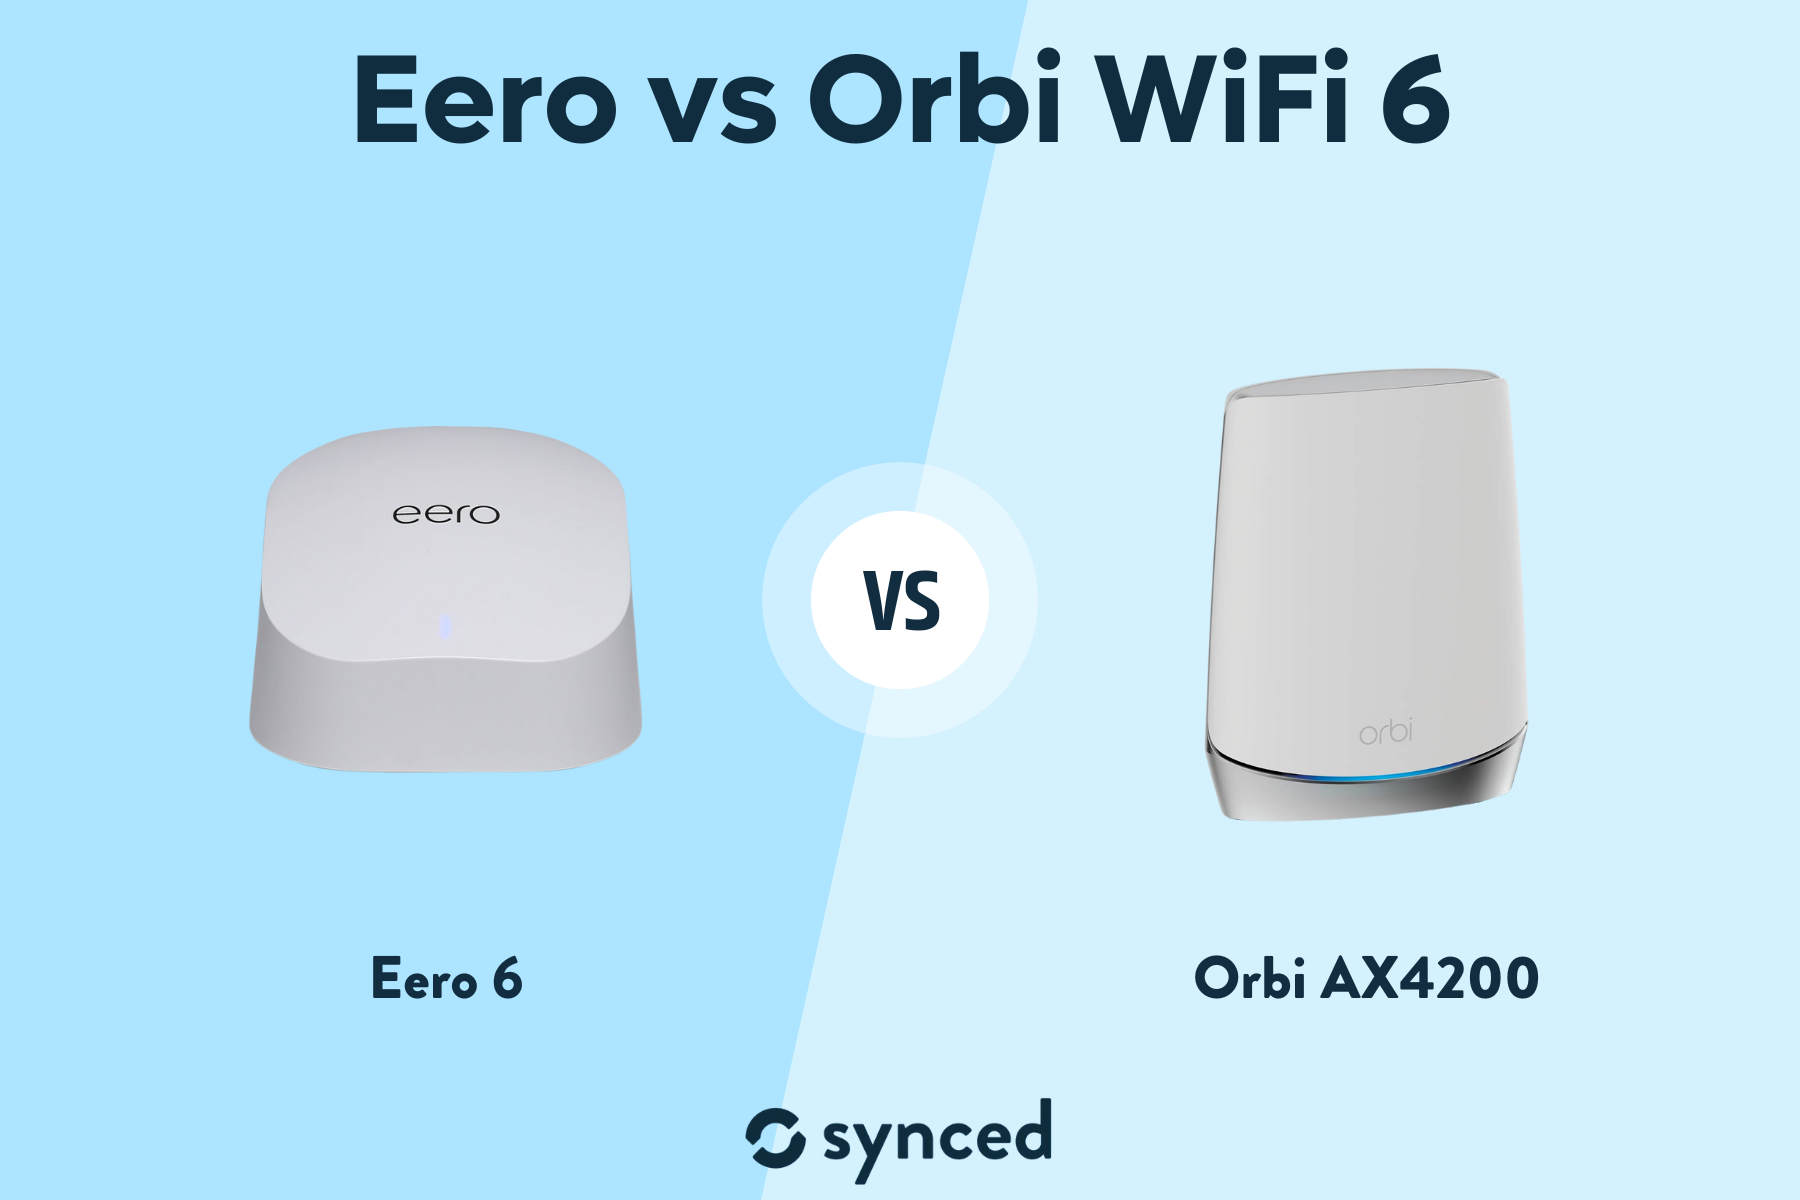 Eero vs Orbi WiFi 6